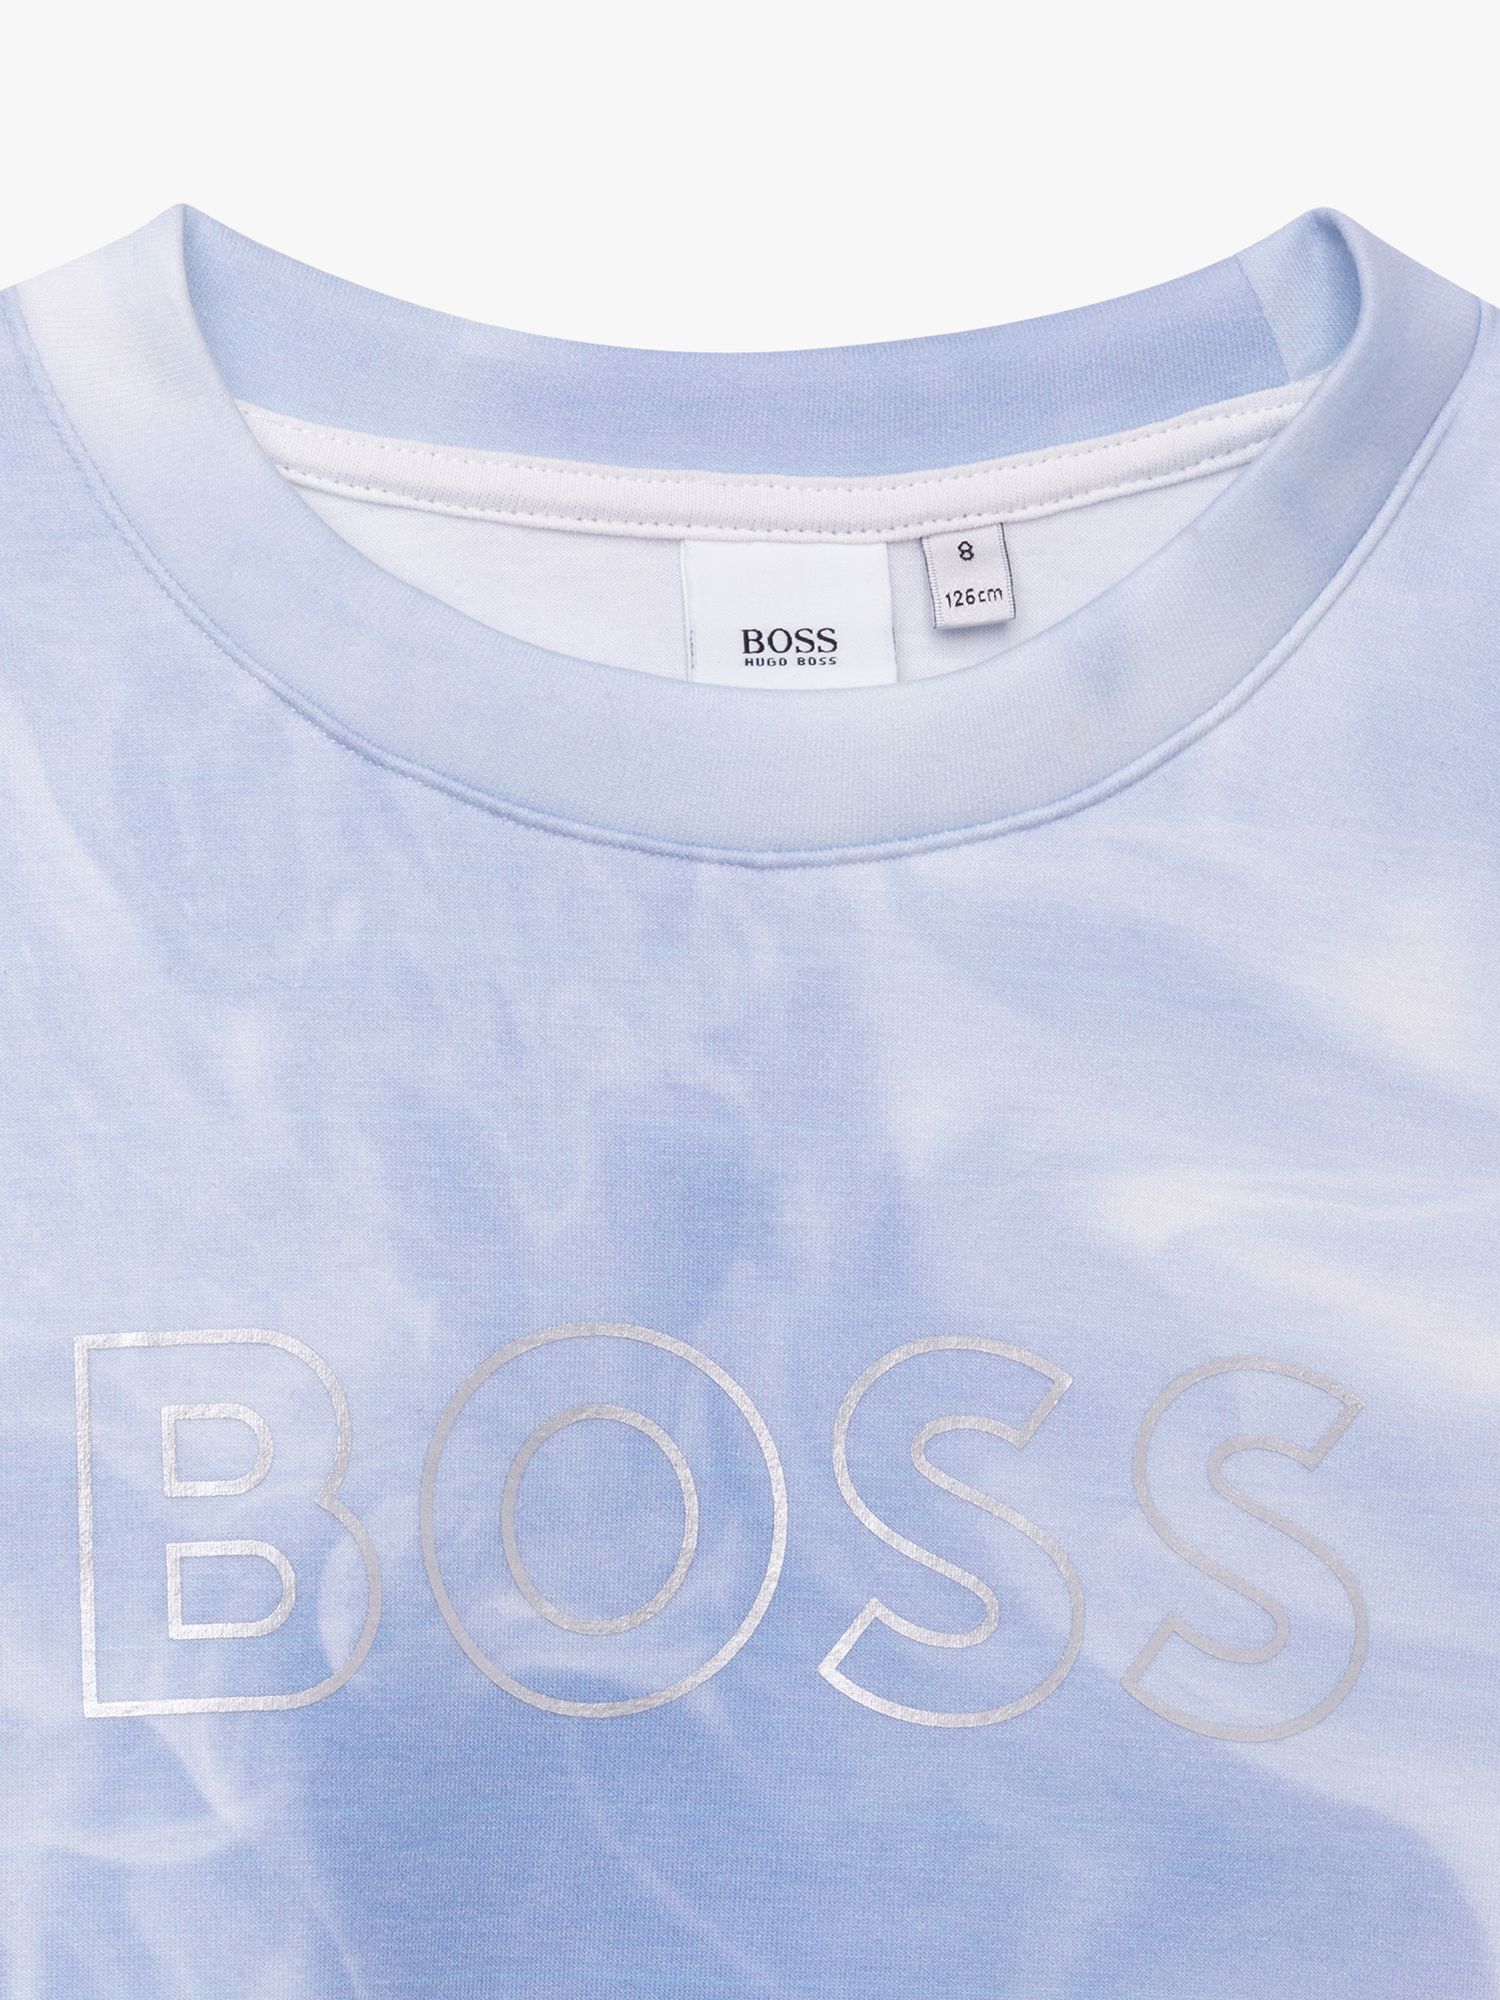 BOSS Kidswear tie dye-print crew neck sweatshirt - Blue